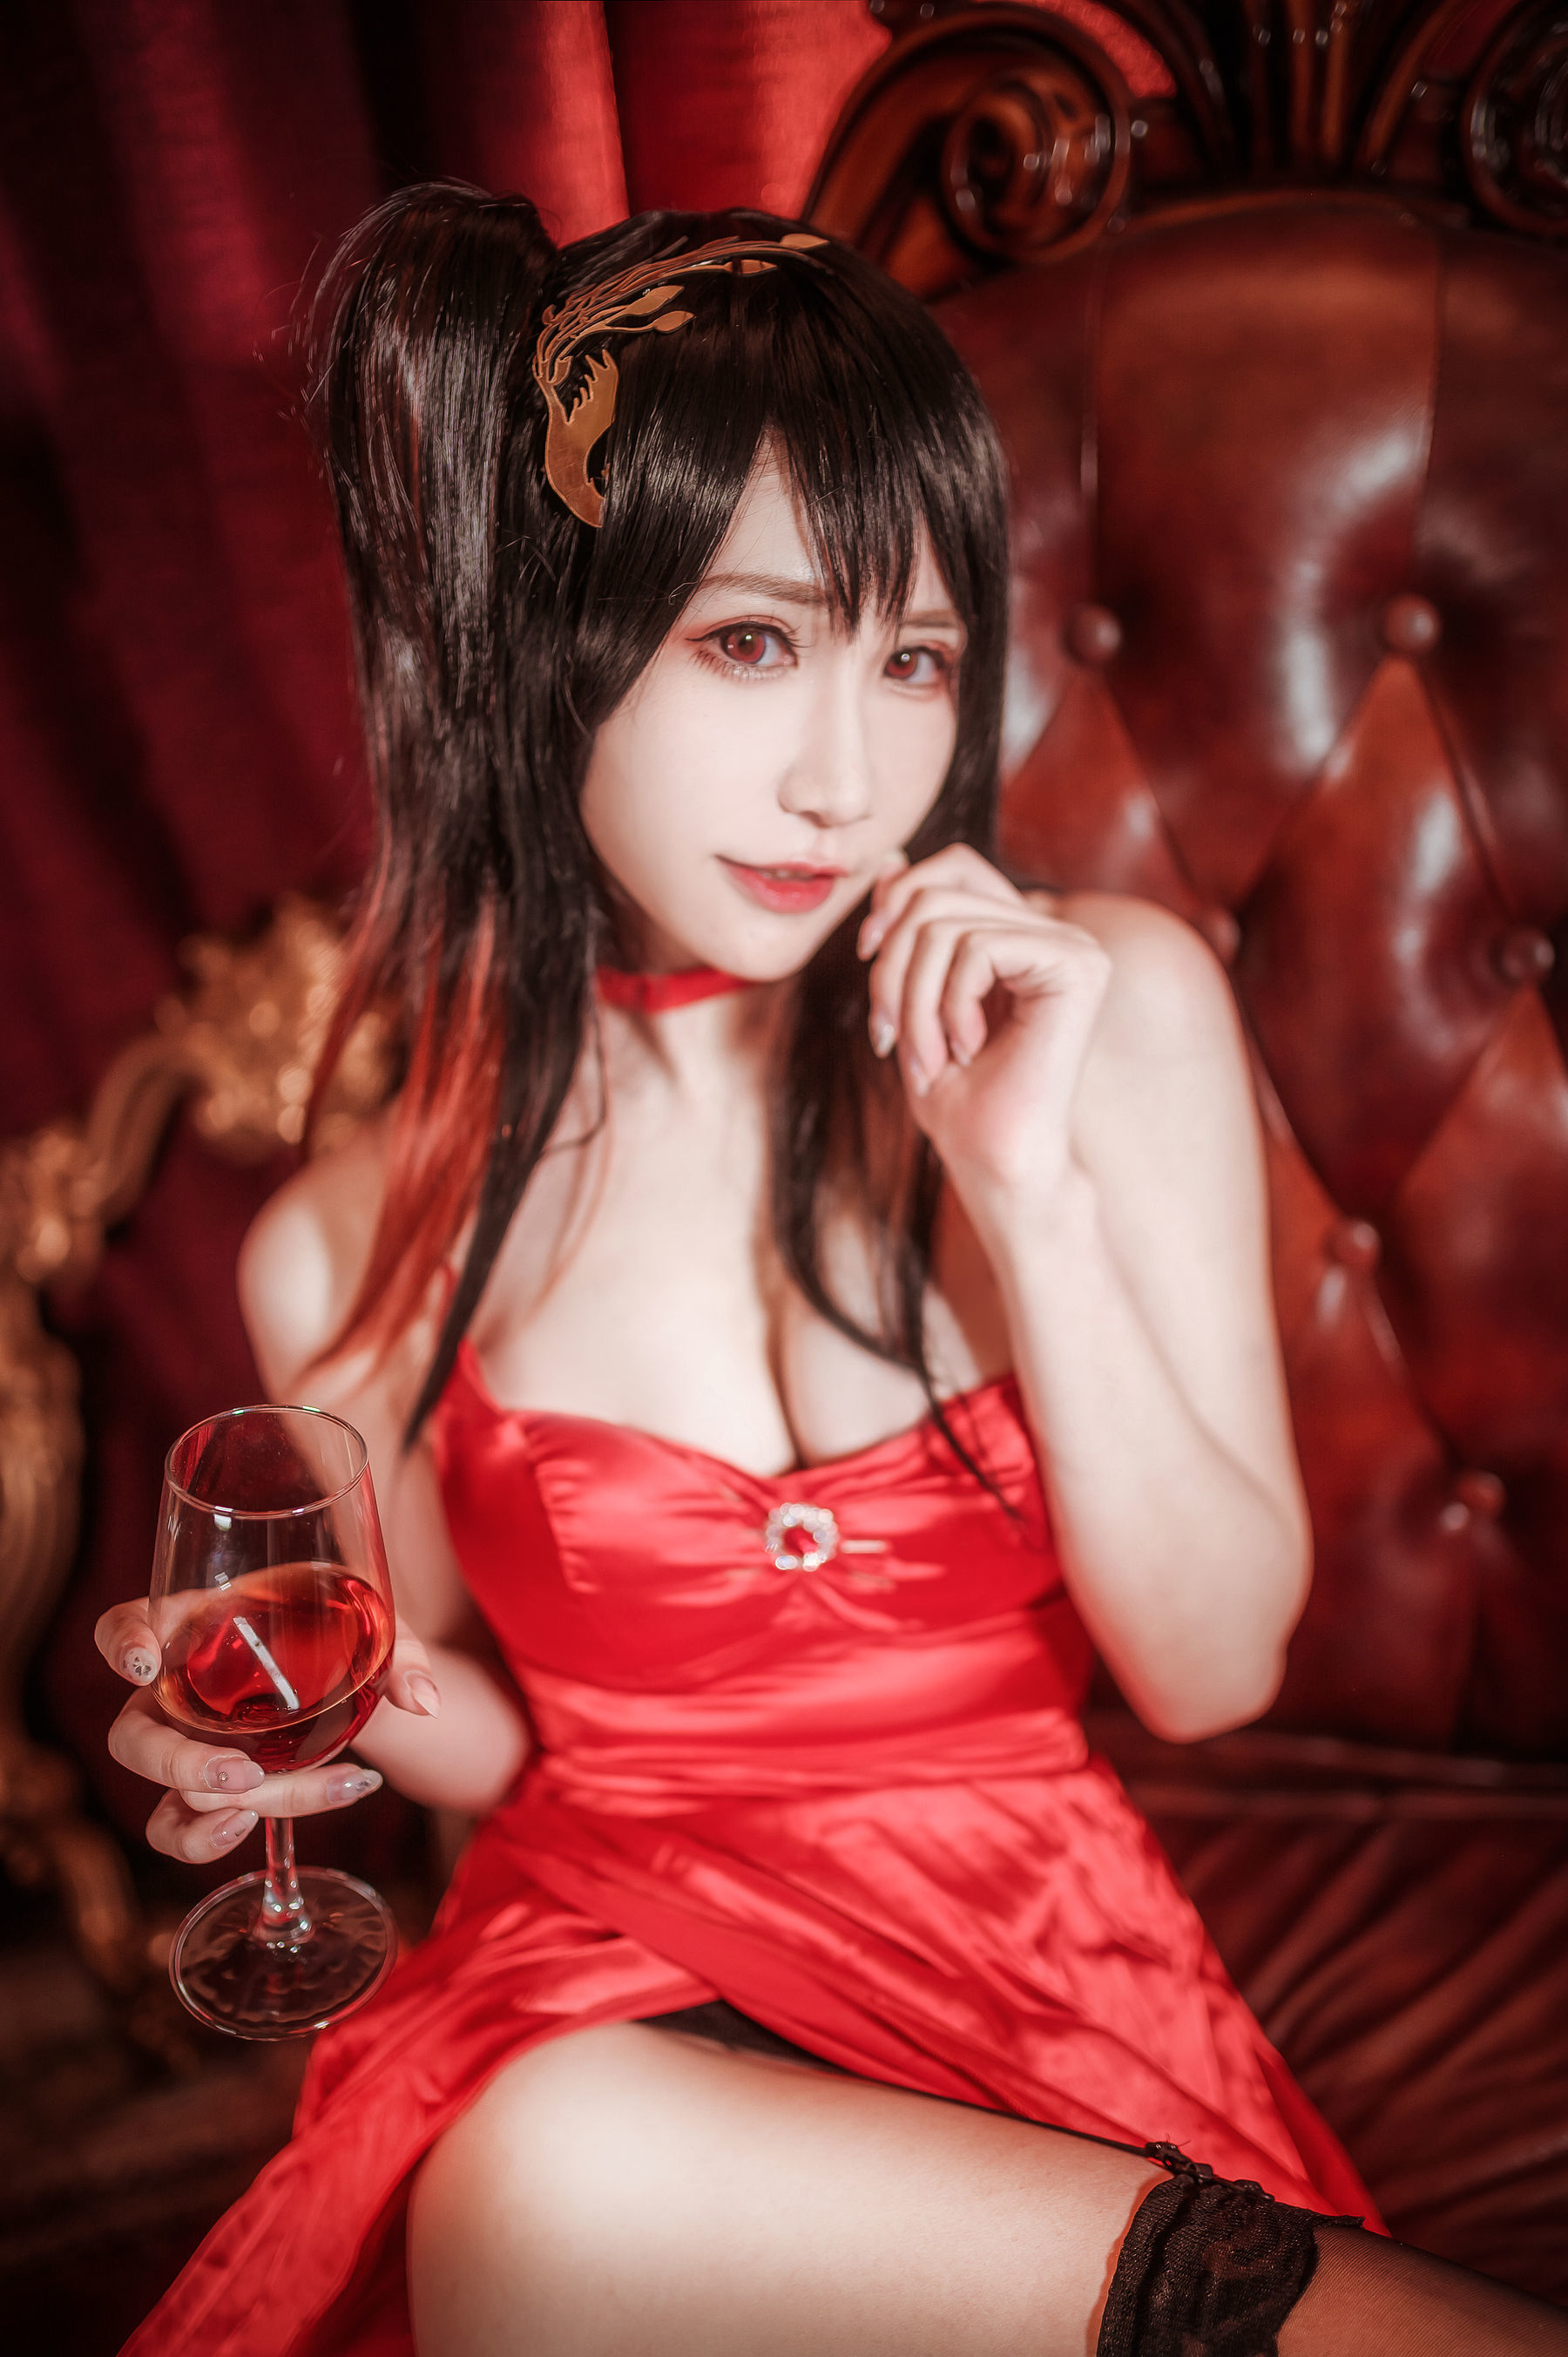 [网 红 COSER] Anime blogger _fairy – Dafen dress photo set